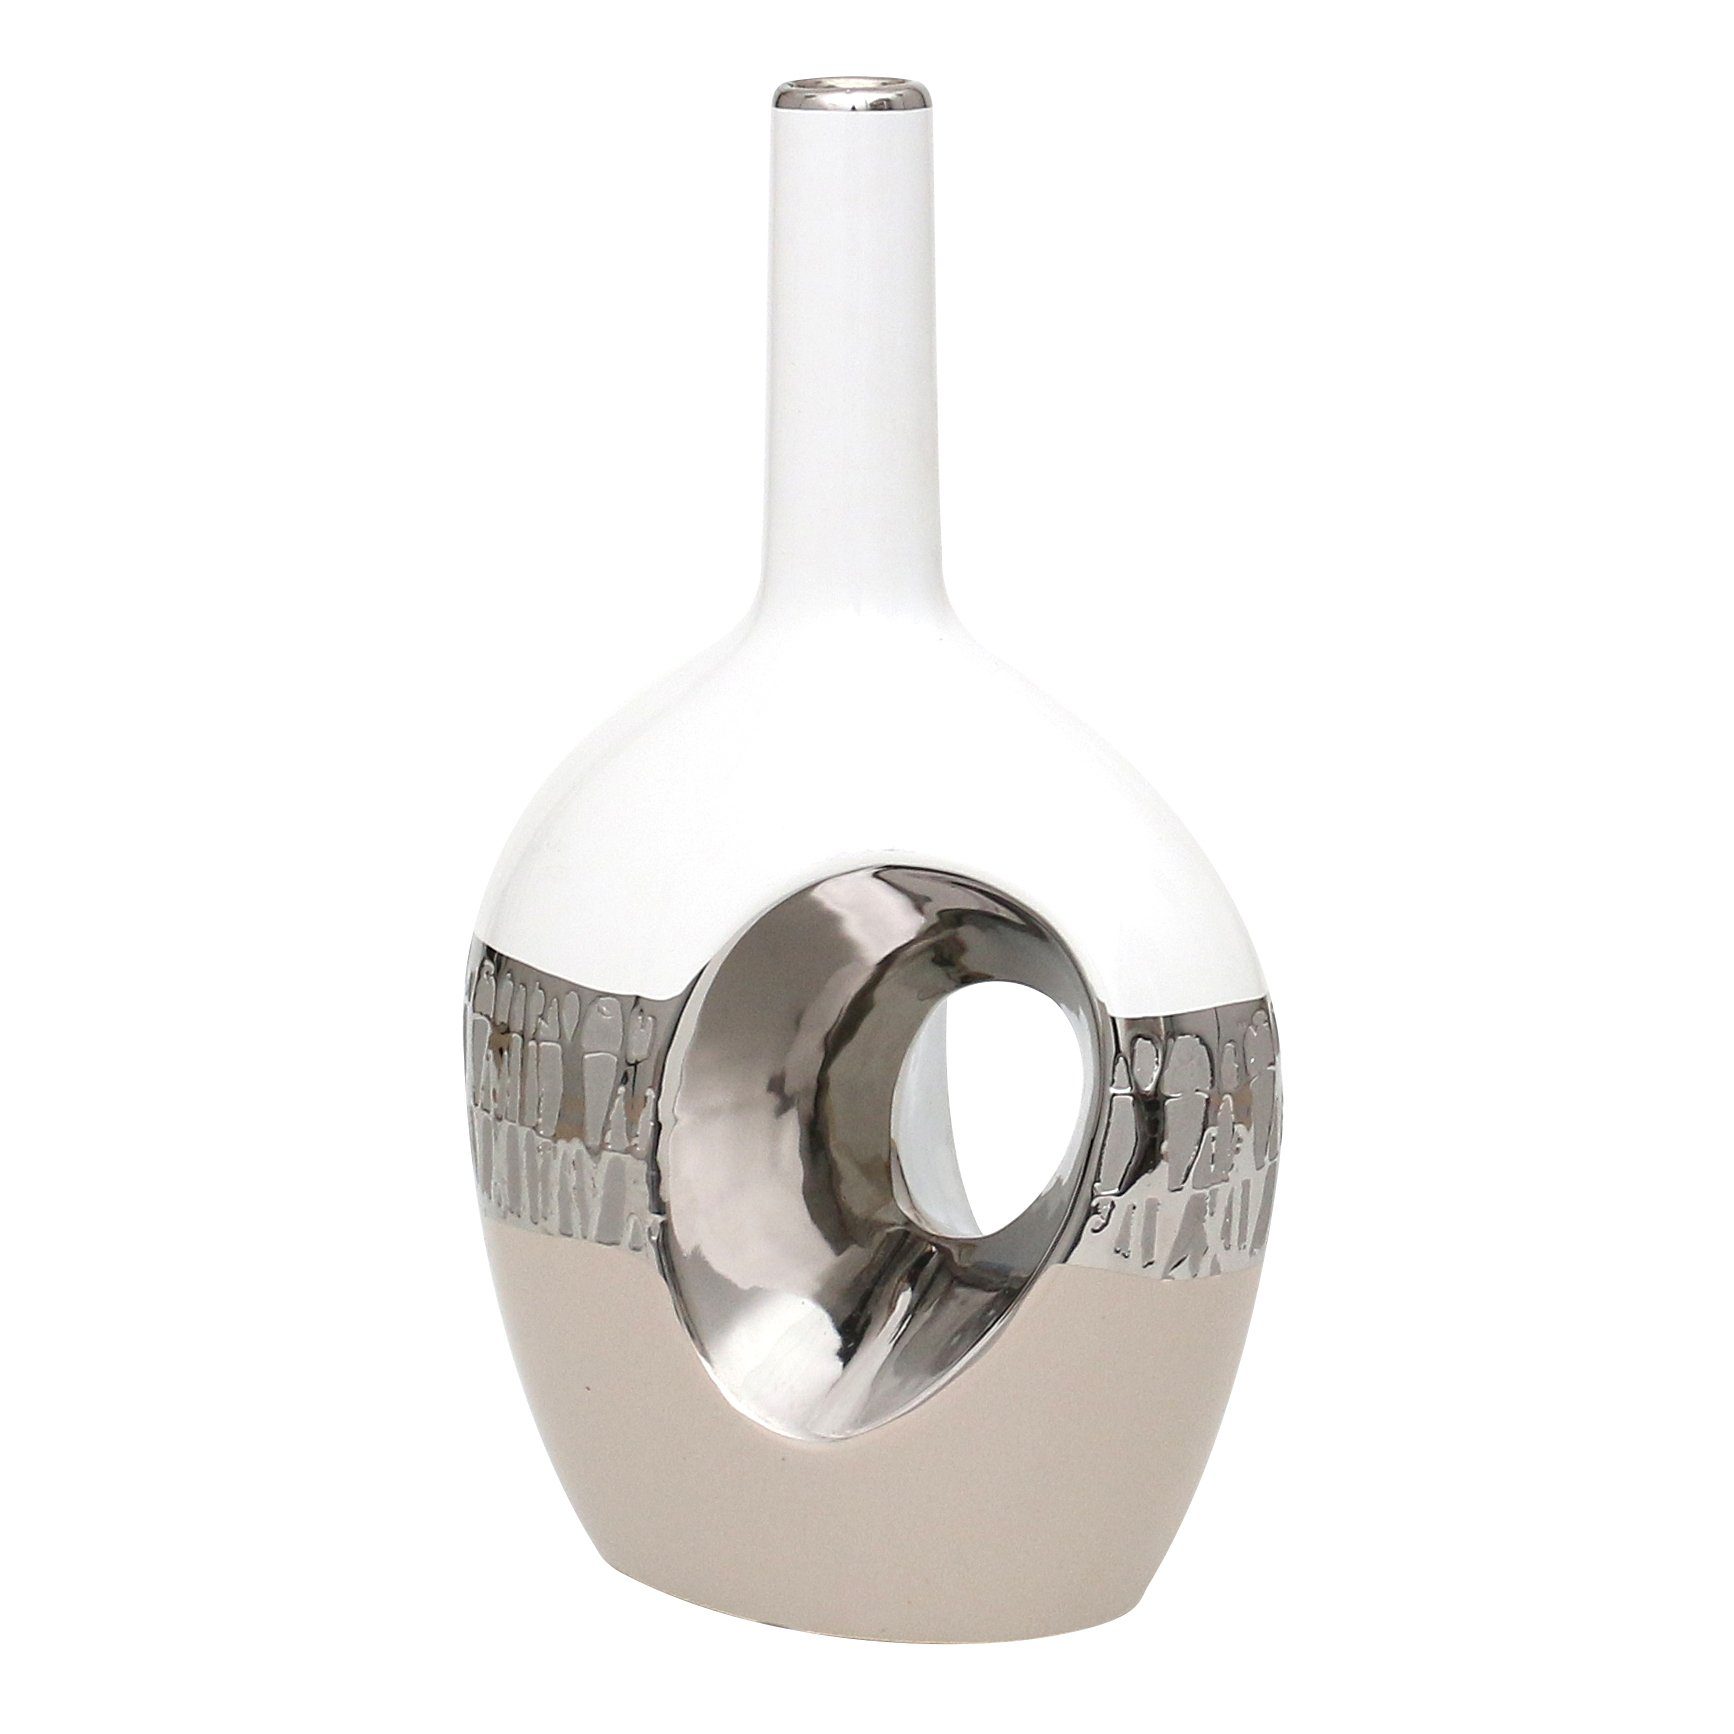 Dekohelden24 Dekovase Edle Moderne Deko Designer Keramik Vase oval mit Loch (1 Vase, 1 St) | Dekovasen